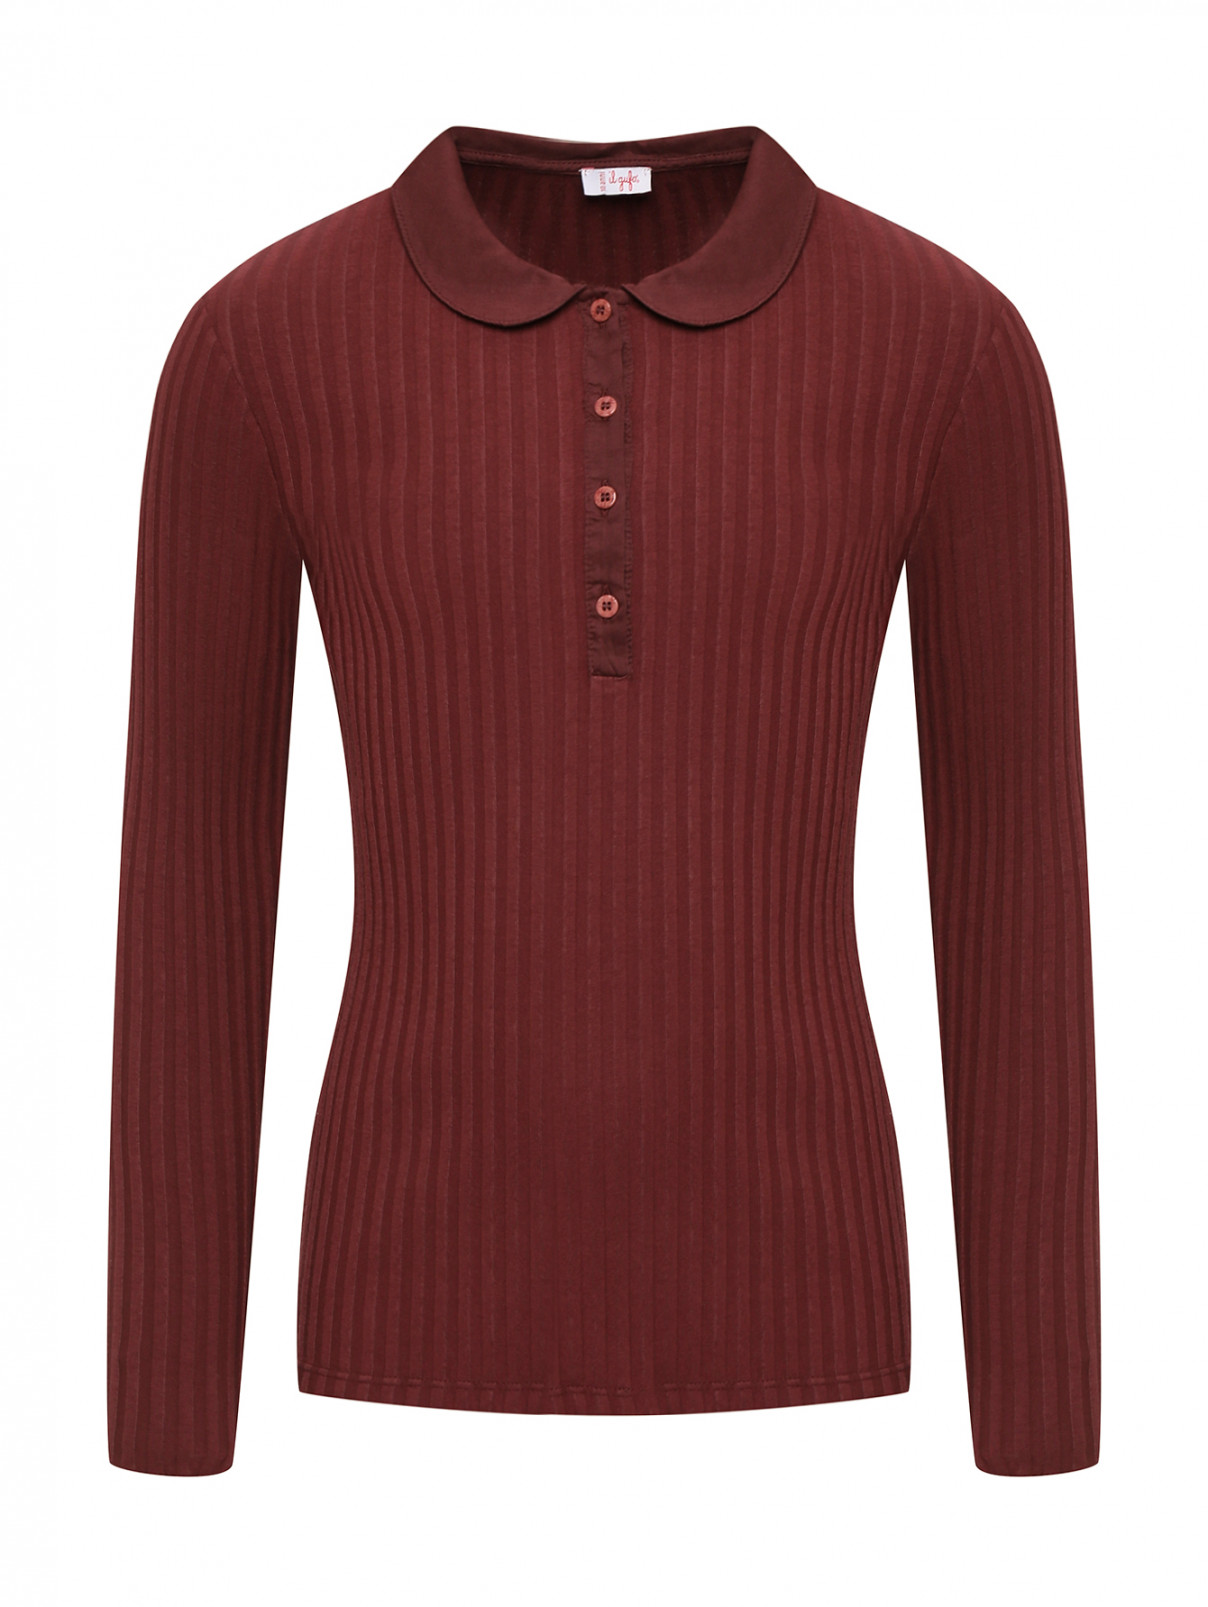 Трикотажная блуза с отложным воротником Il Gufo  –  Общий вид  – Цвет:  Коричневый